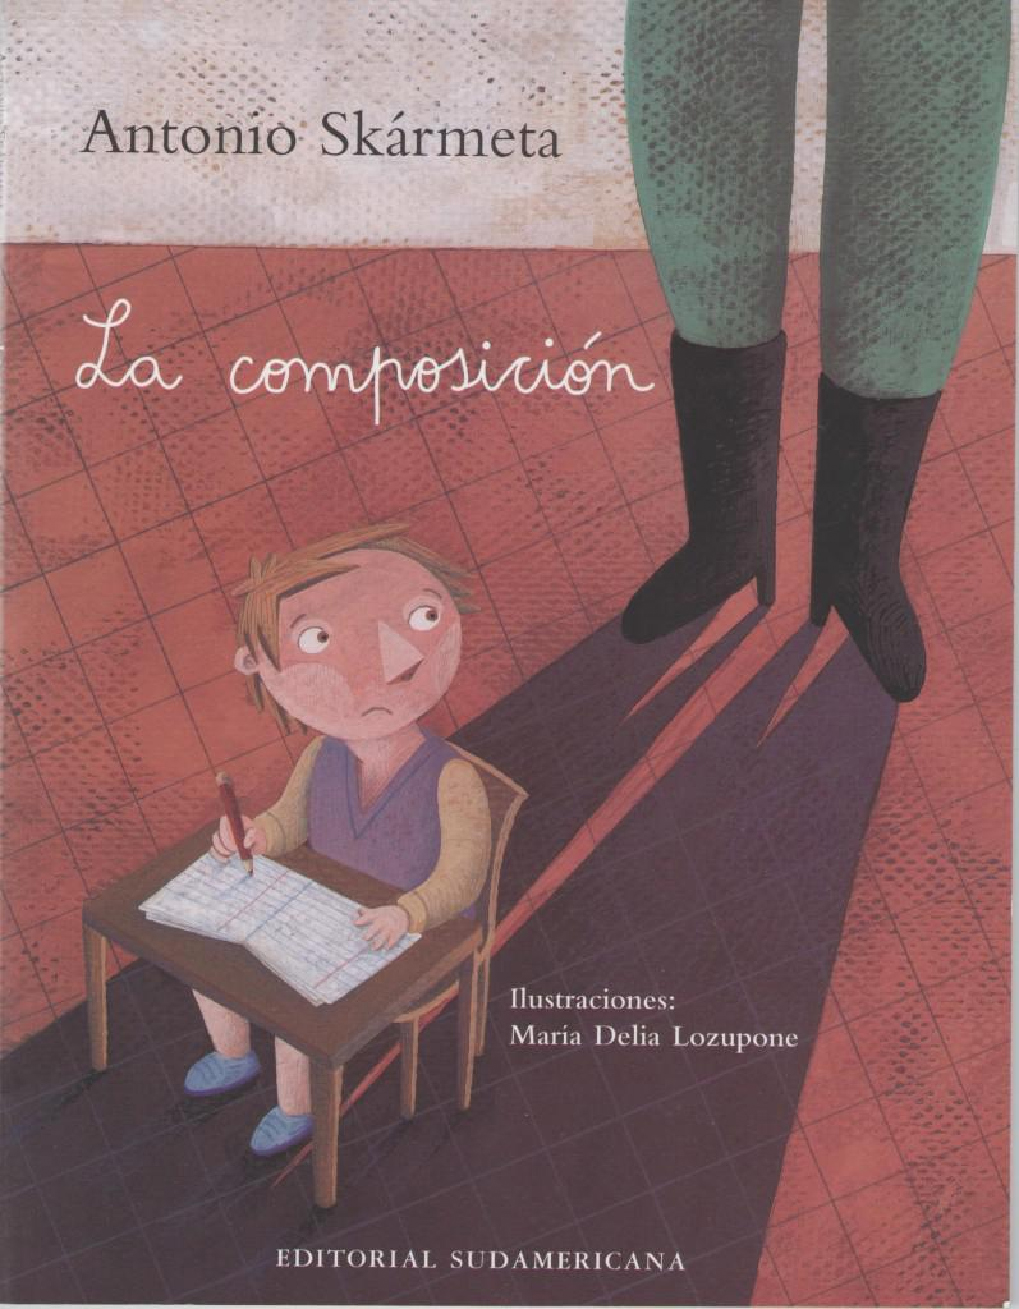 La Composición” de Antonio Skármeta: un cuento para niños sobre la  dictadura | Qué hacemos má?!